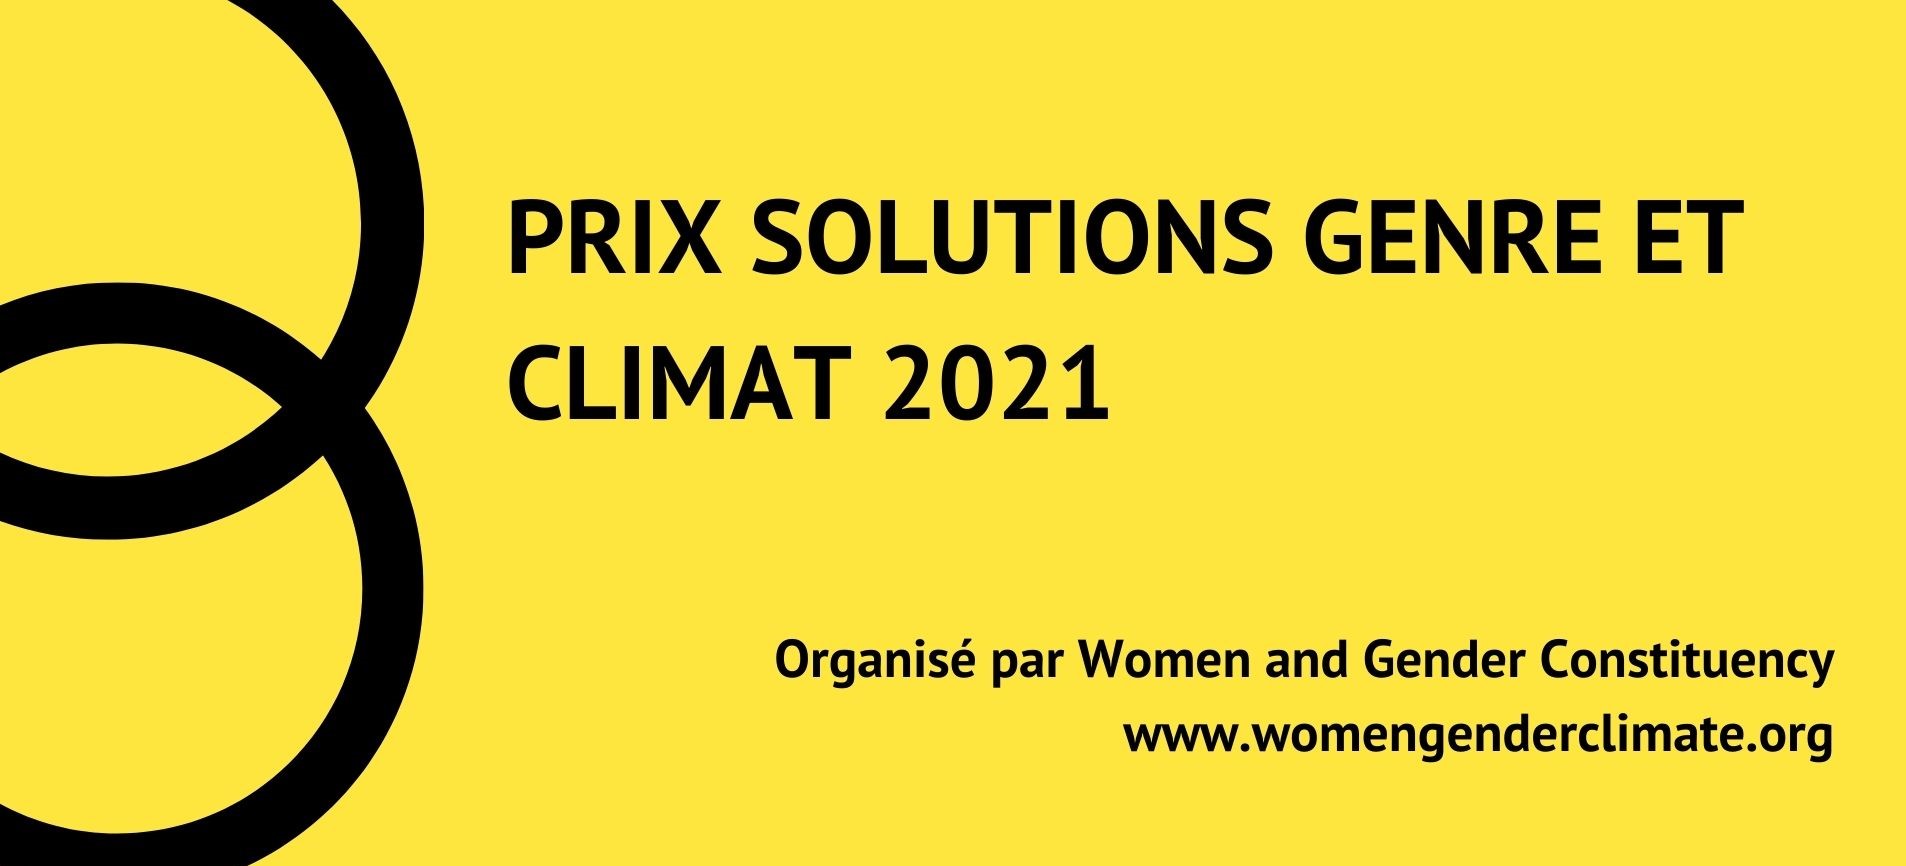 Women & Gender Constituency lance le Prix Solutions Genre et Climat